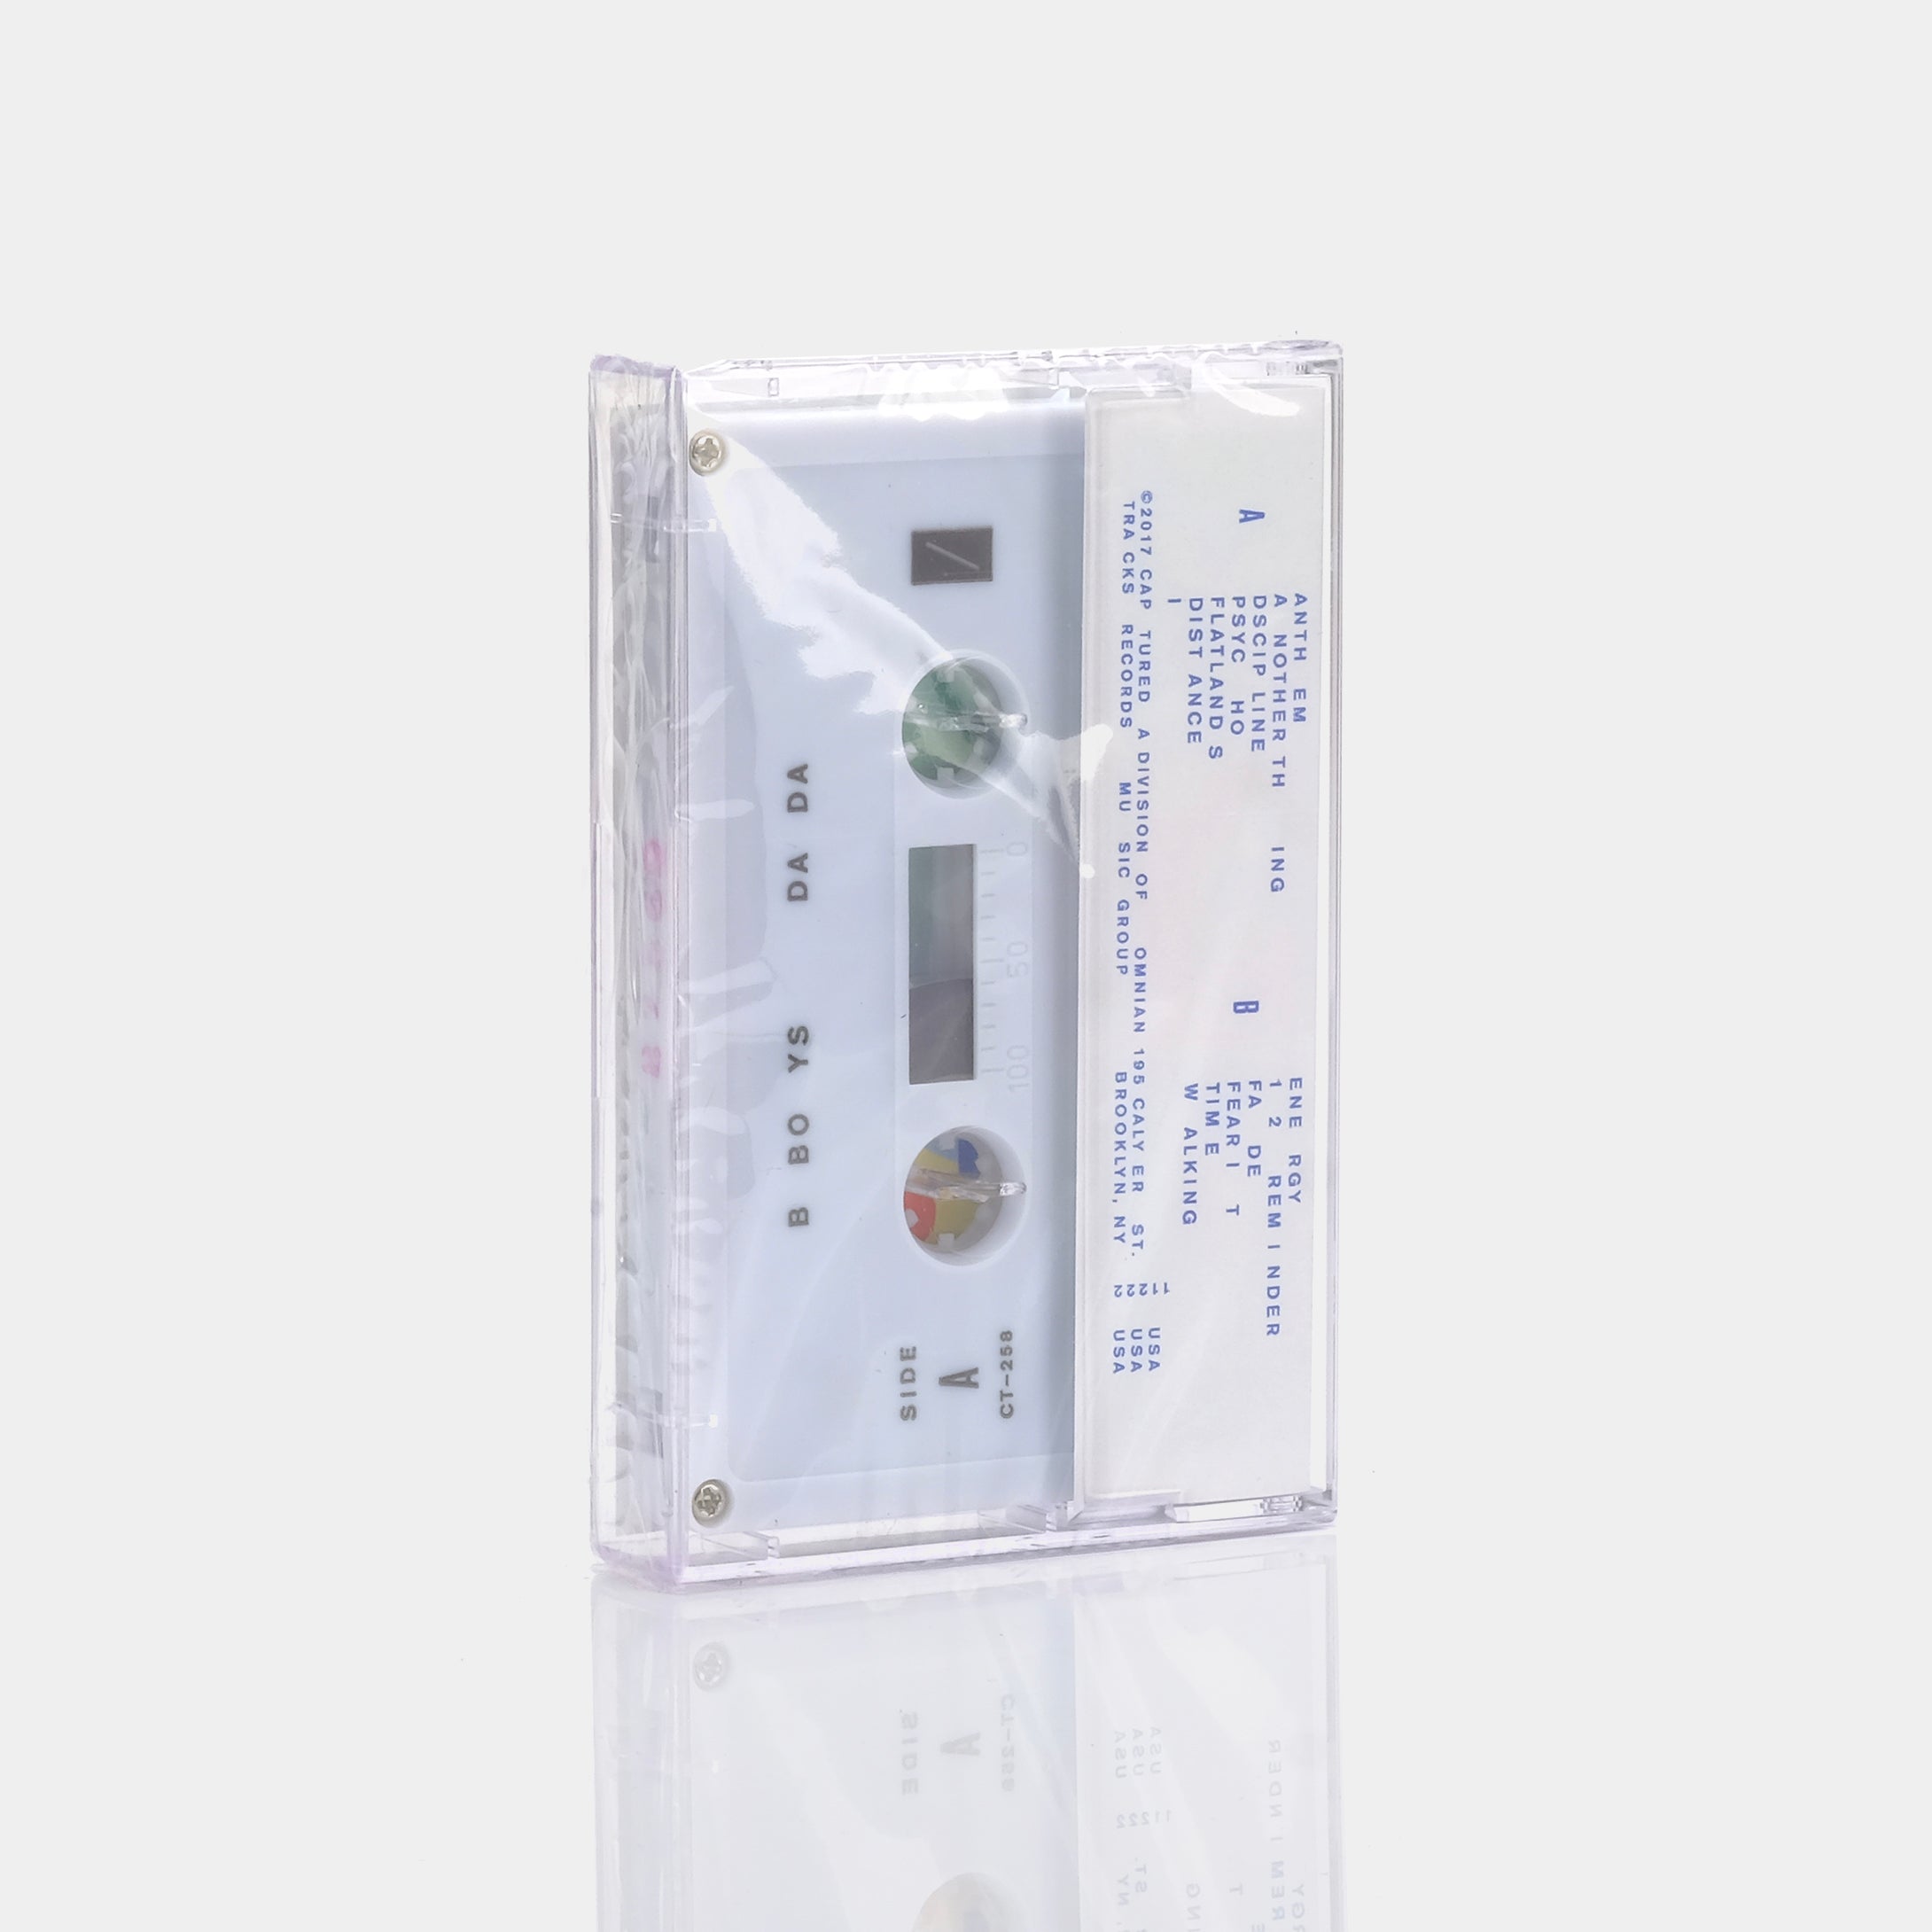 B Boys - Dada Cassette Tape